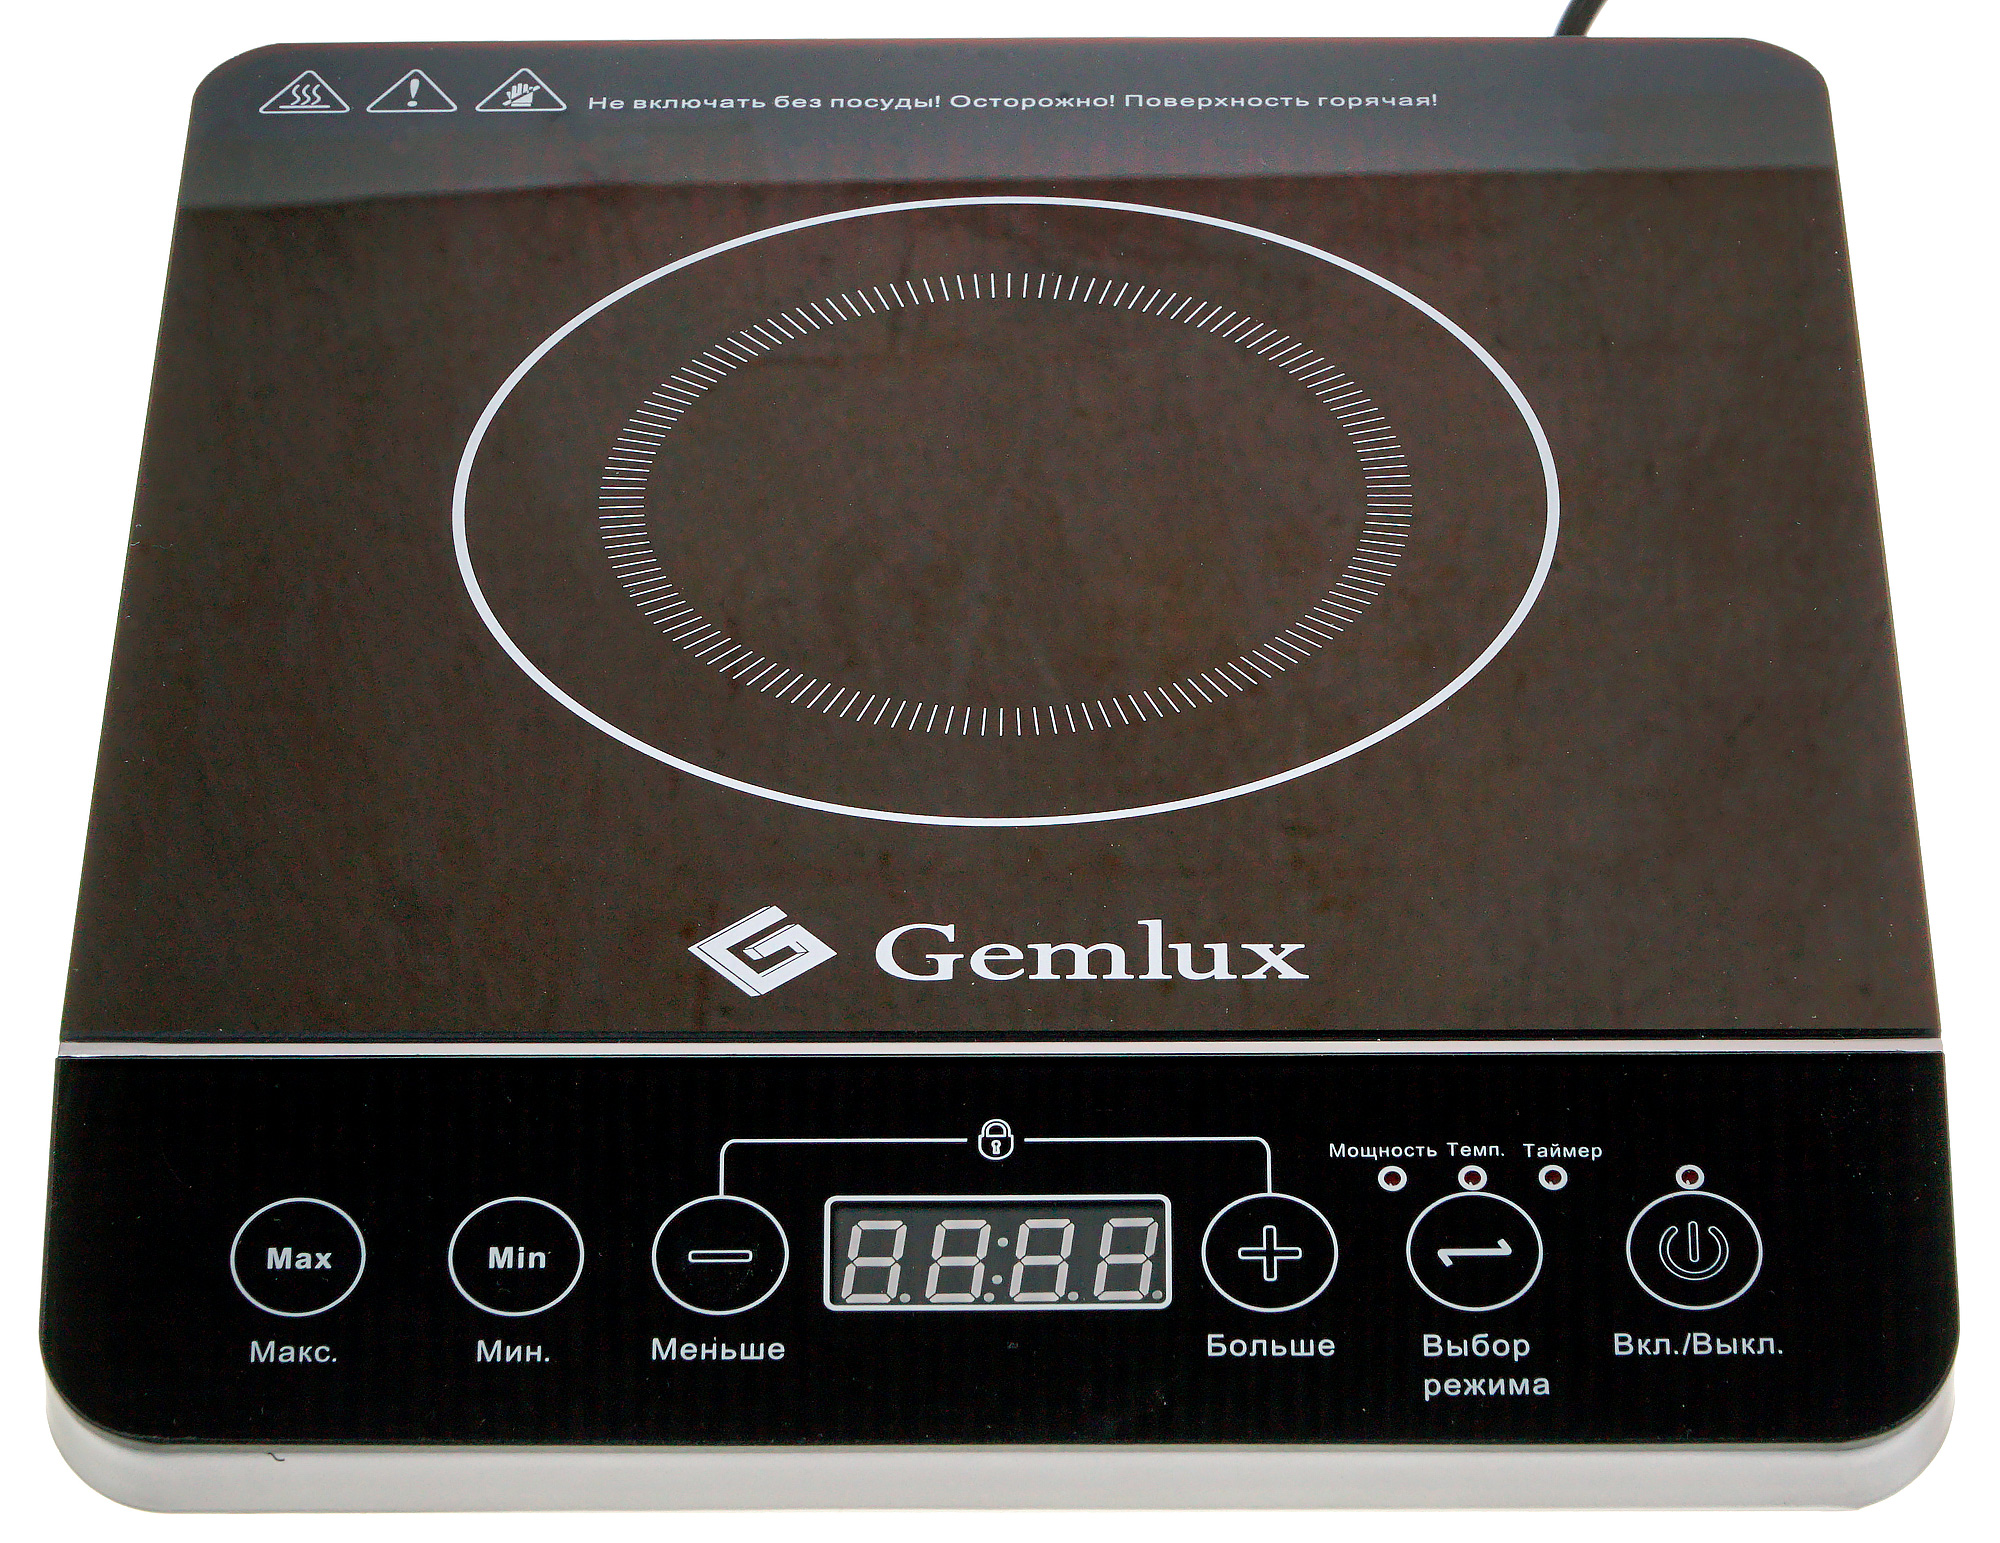 Iplate pro купить. Плитка индукционная Gemlux gl-ip20a. Электрическая плита Gemlux gl-ip20a. Электрическая плита Gemlux gl-ip20a, черный. Плитка индукционная одноконфорочная 3.5 КВТ.